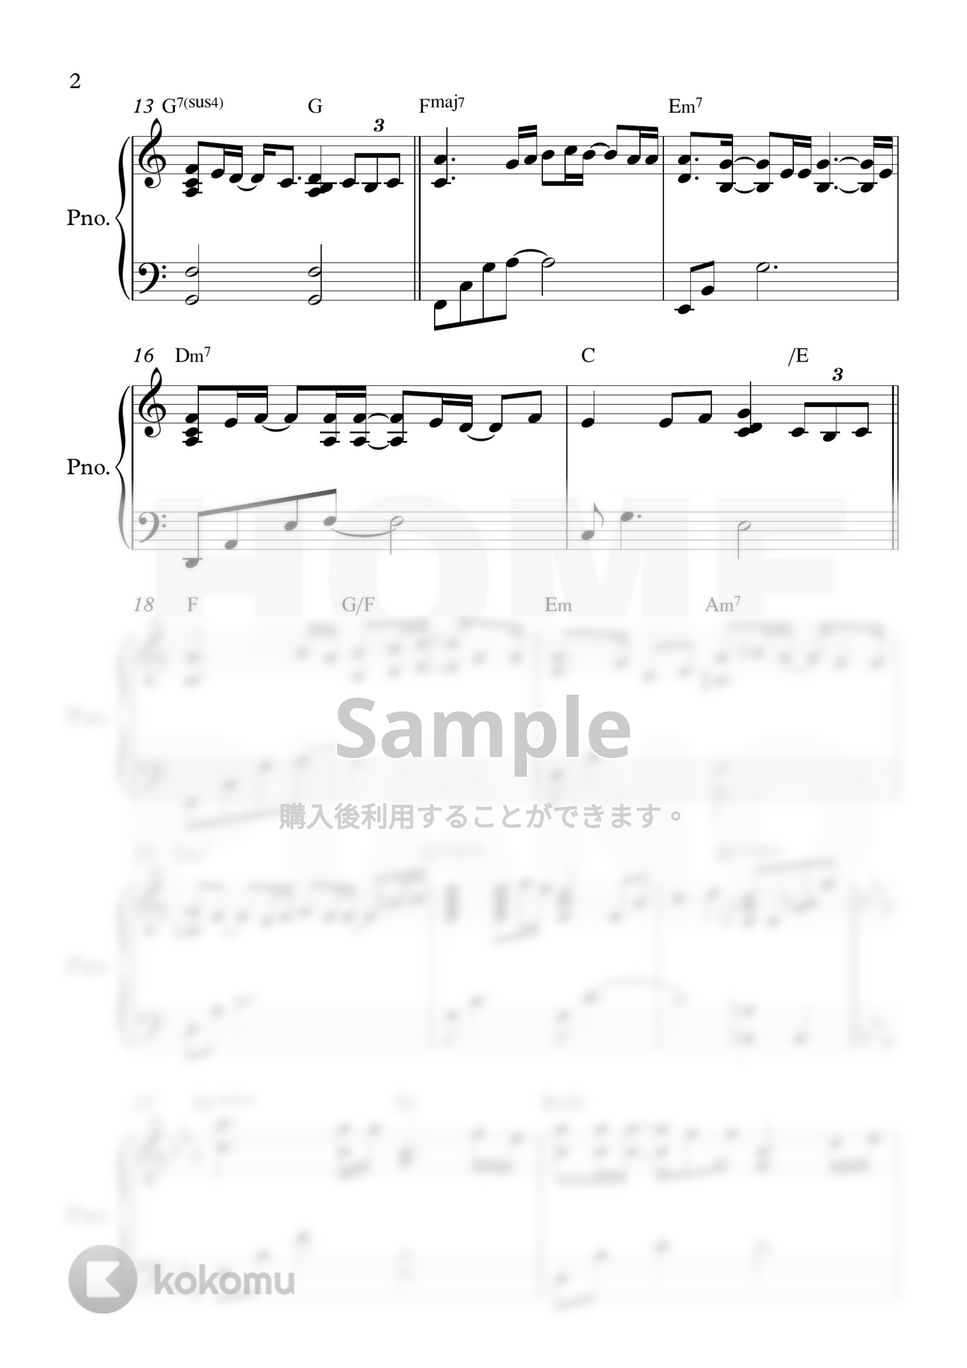 イム・ジェヒョン - I'm a little drunk (上級) by HOME PIANO